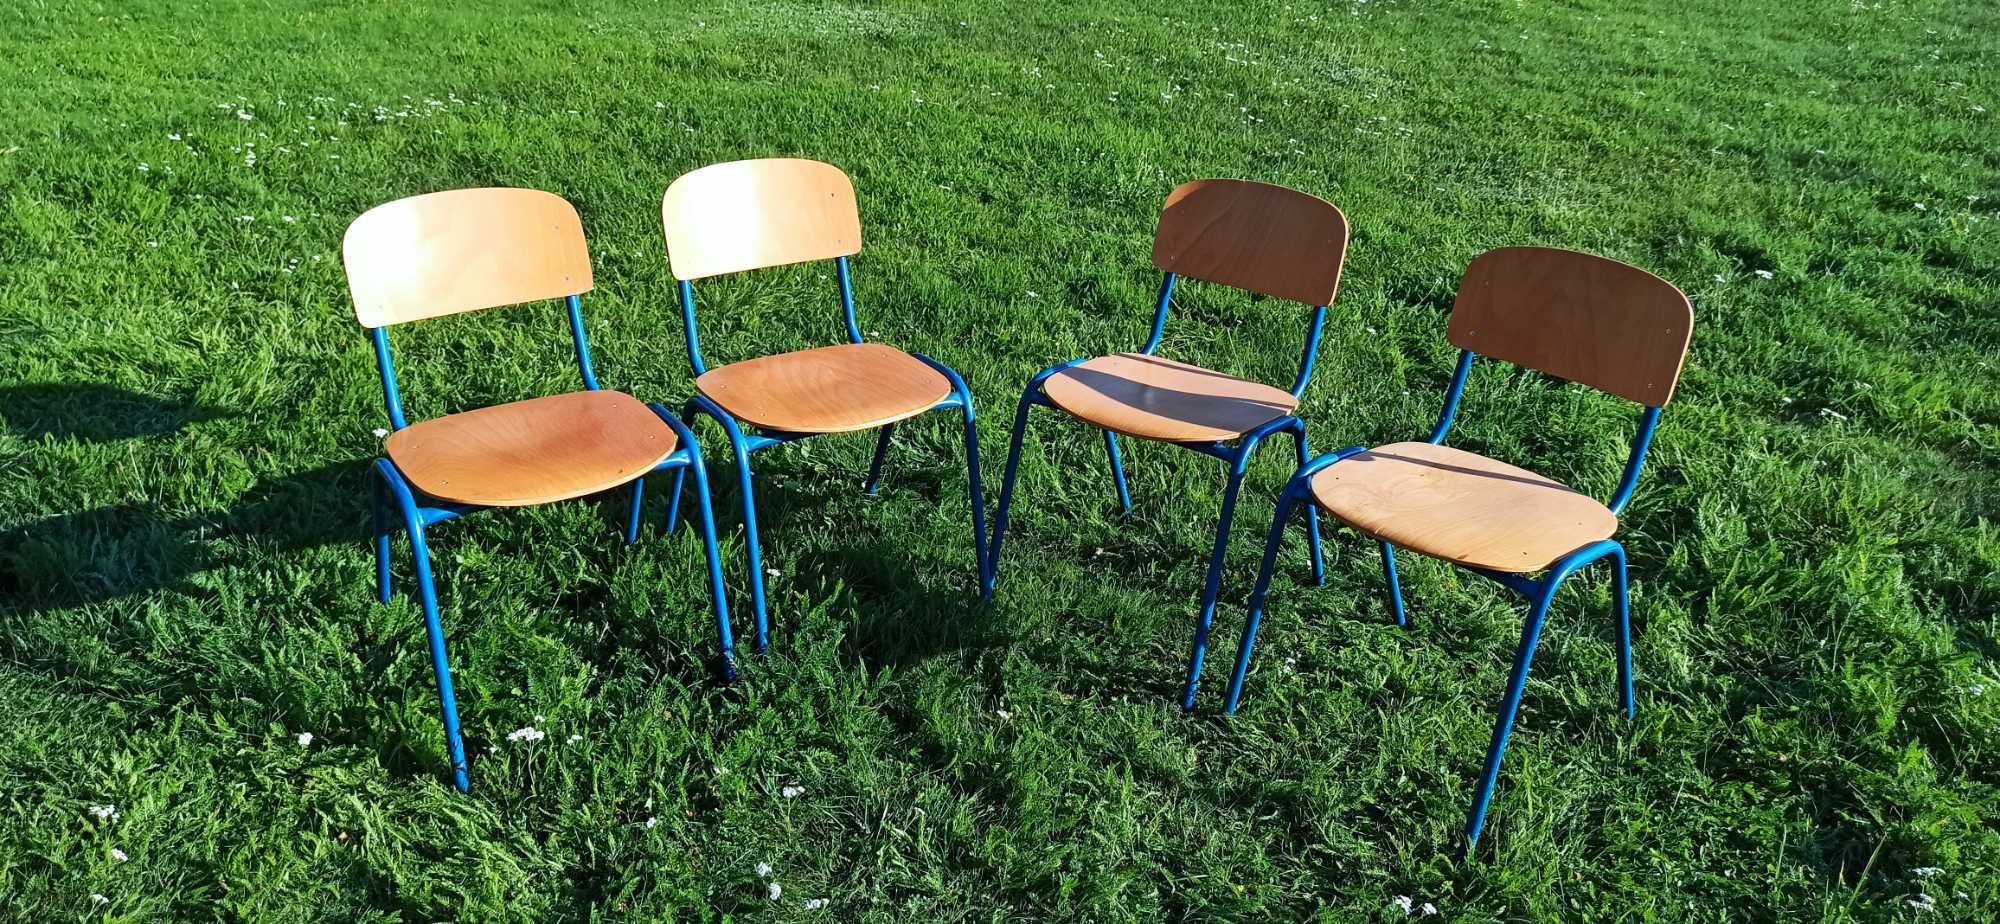 Zestaw 4 krzeseł szkolnych.